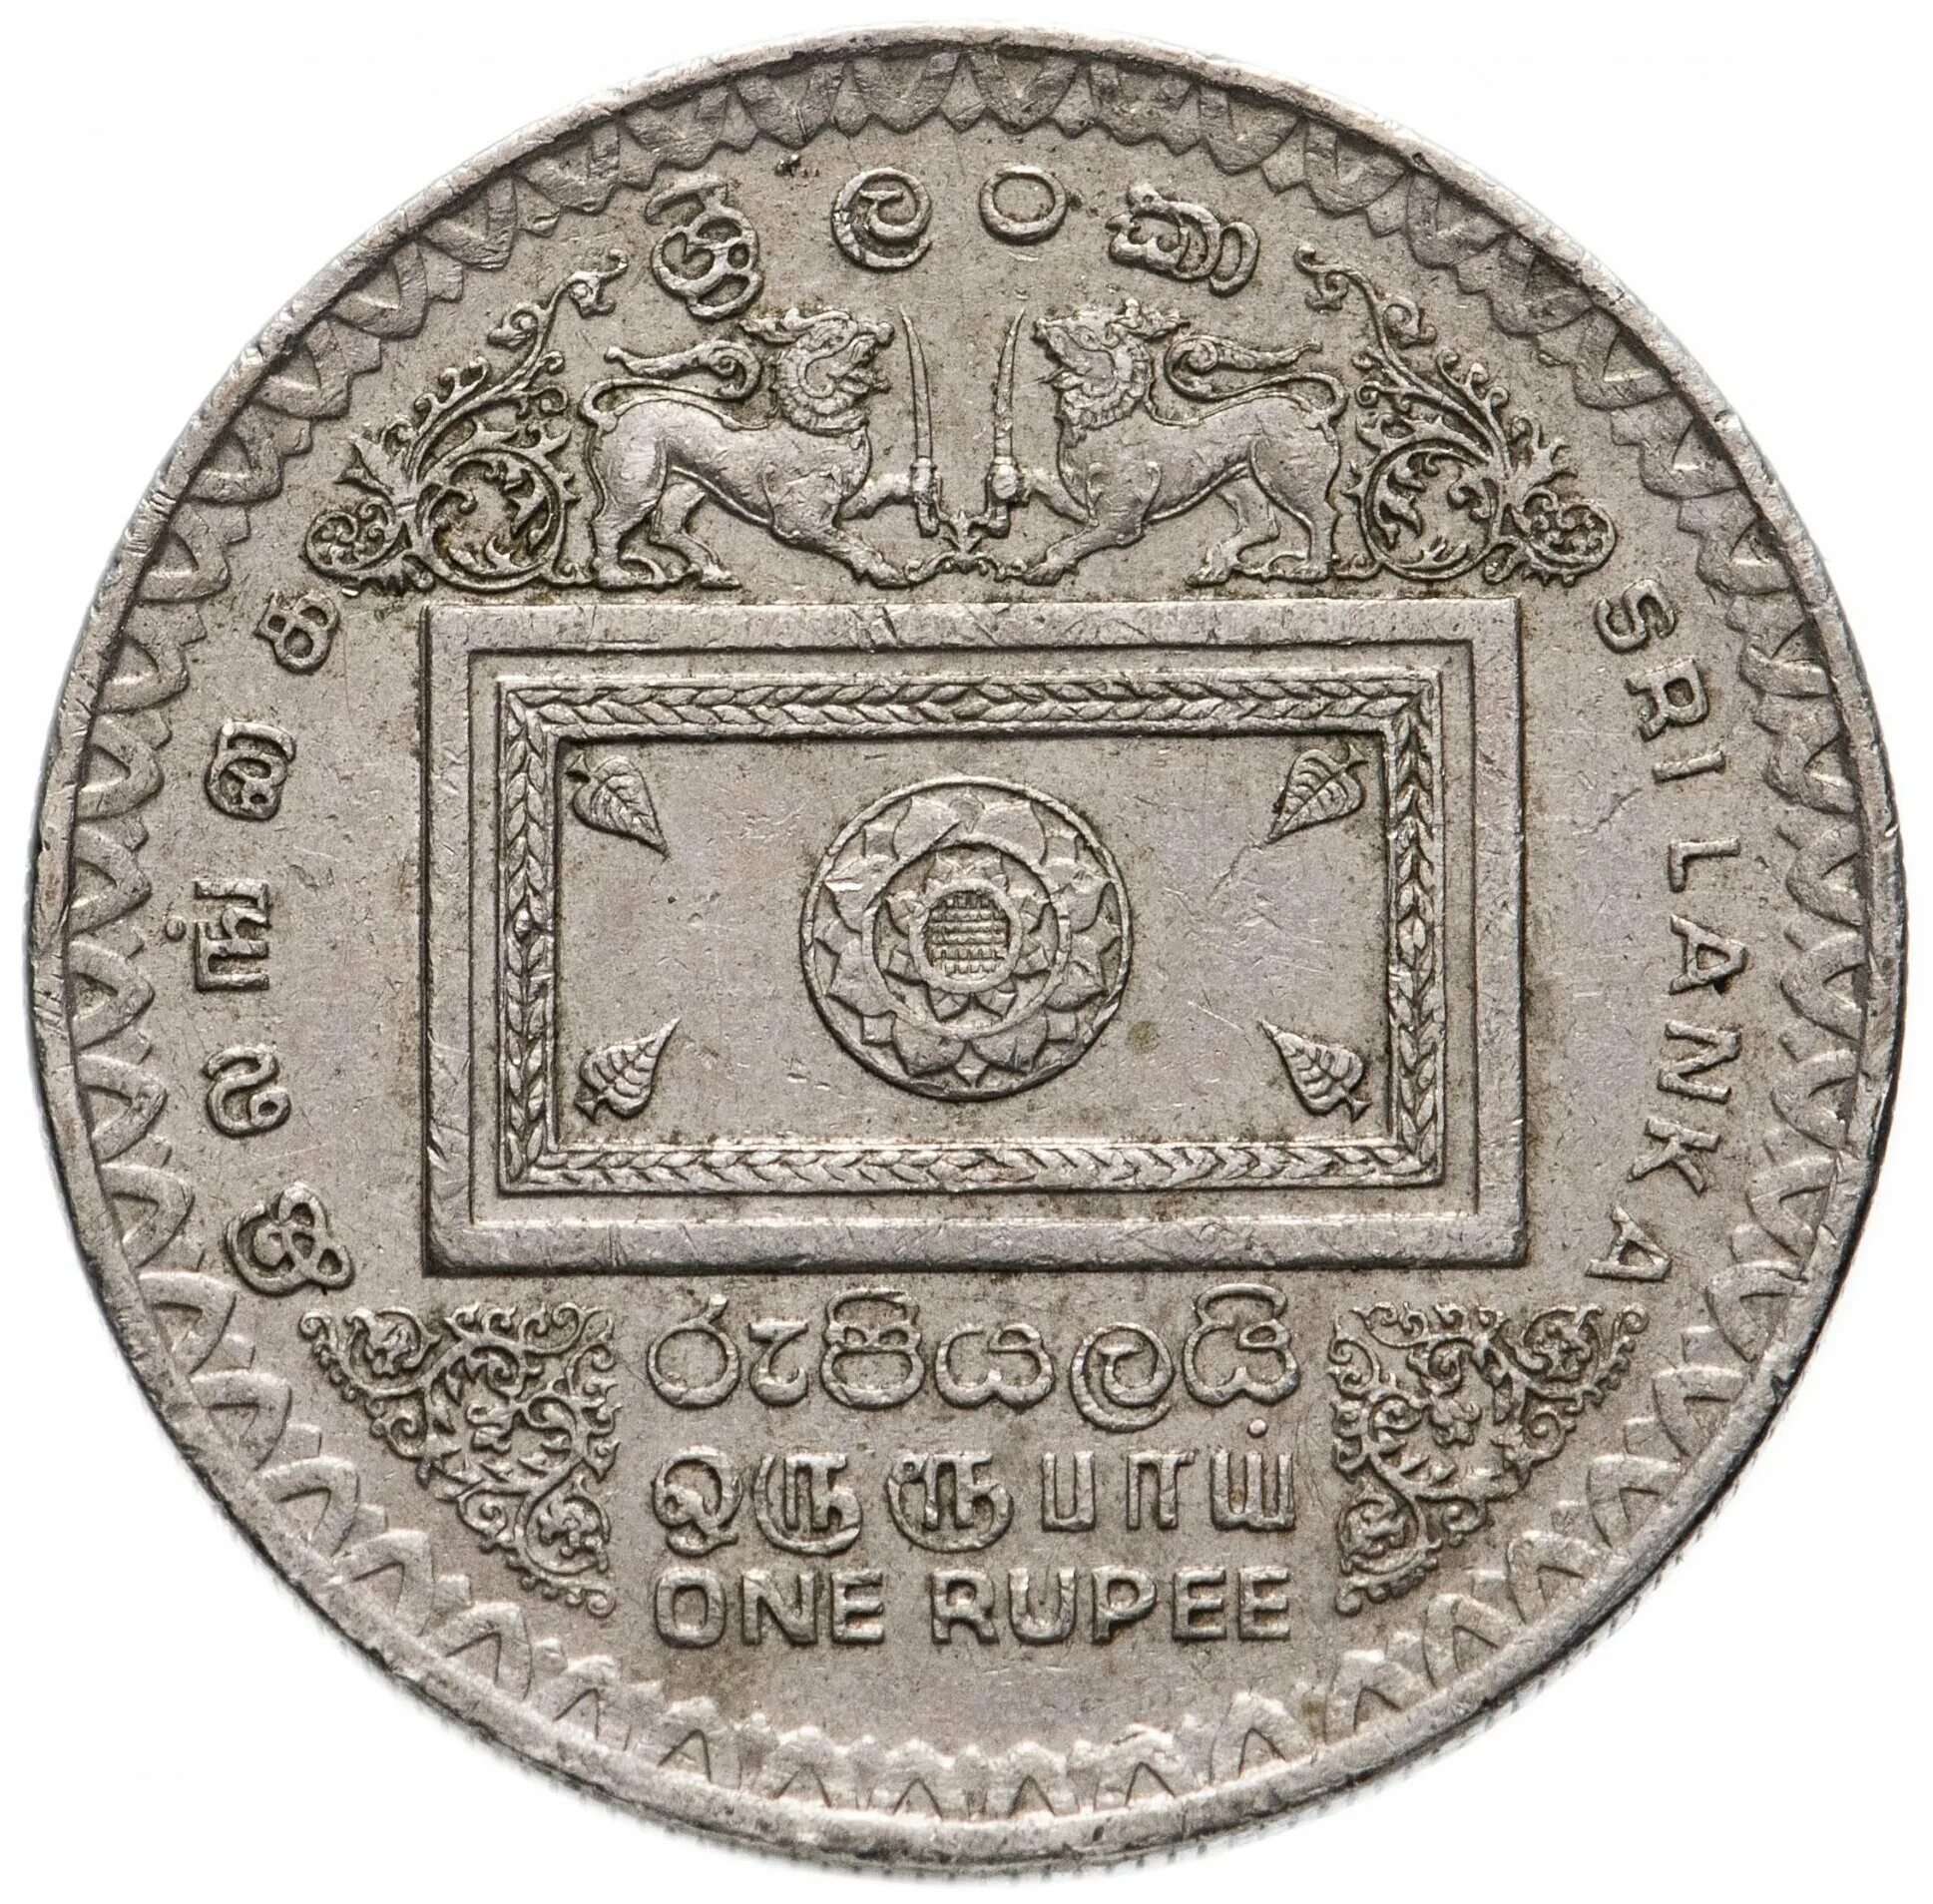 Банк шри ланки. Монеты Шри Ланки. 2 Рупи форма монеты Шри Ланки. Монета Шри Ланка Англия старинная. Древние монеты Шри Ланки.